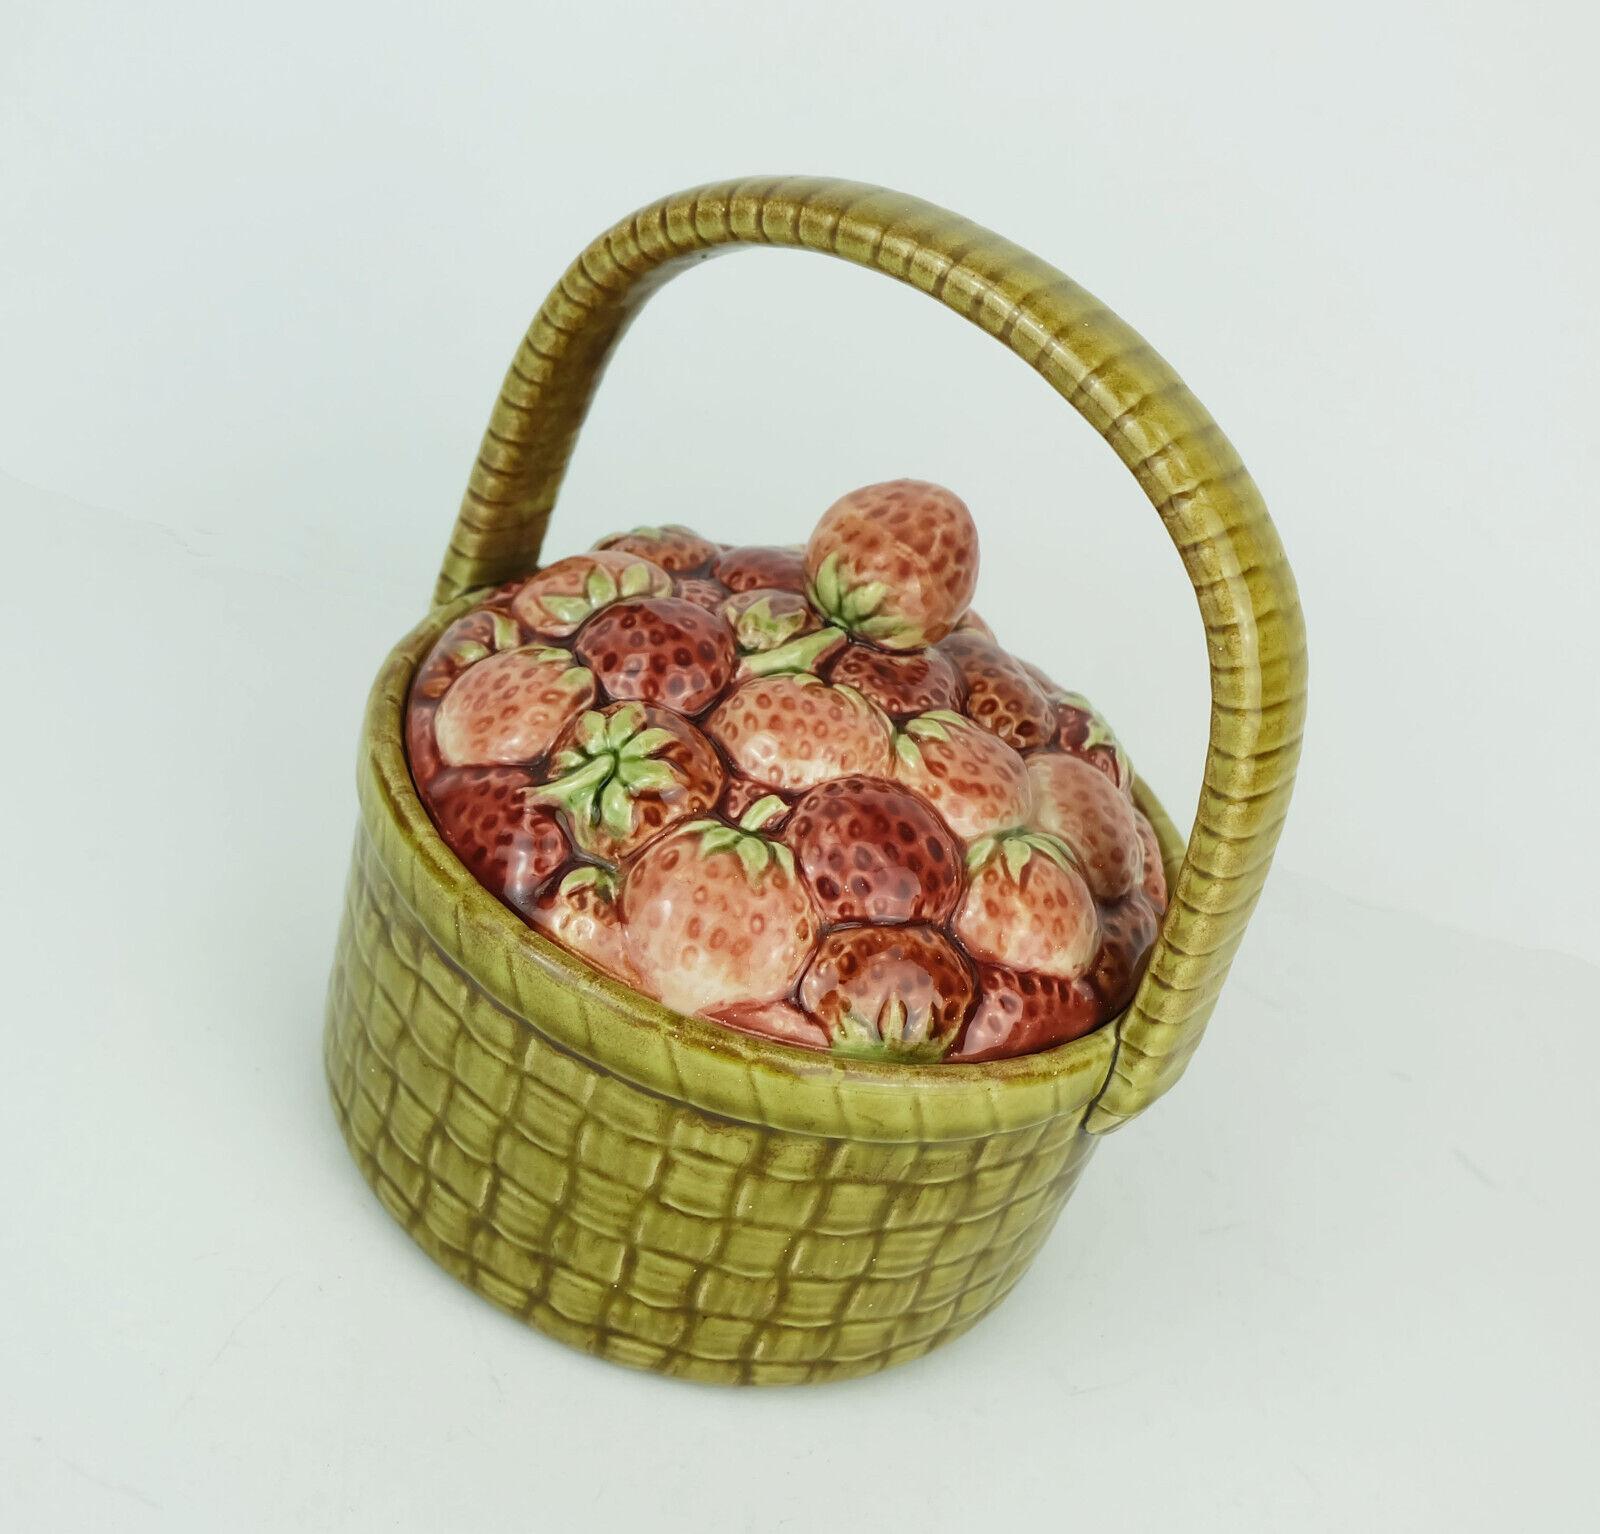 Très belle jarre à couvercle en céramique, Sarreguemines France, vers les années 1920. Pot avec surface en forme de panier, couvercle avec décor de fraises.

Dimensions en cm : 
Hauteur mesurée de la base au bord 8,5 cm, hauteur totale avec la